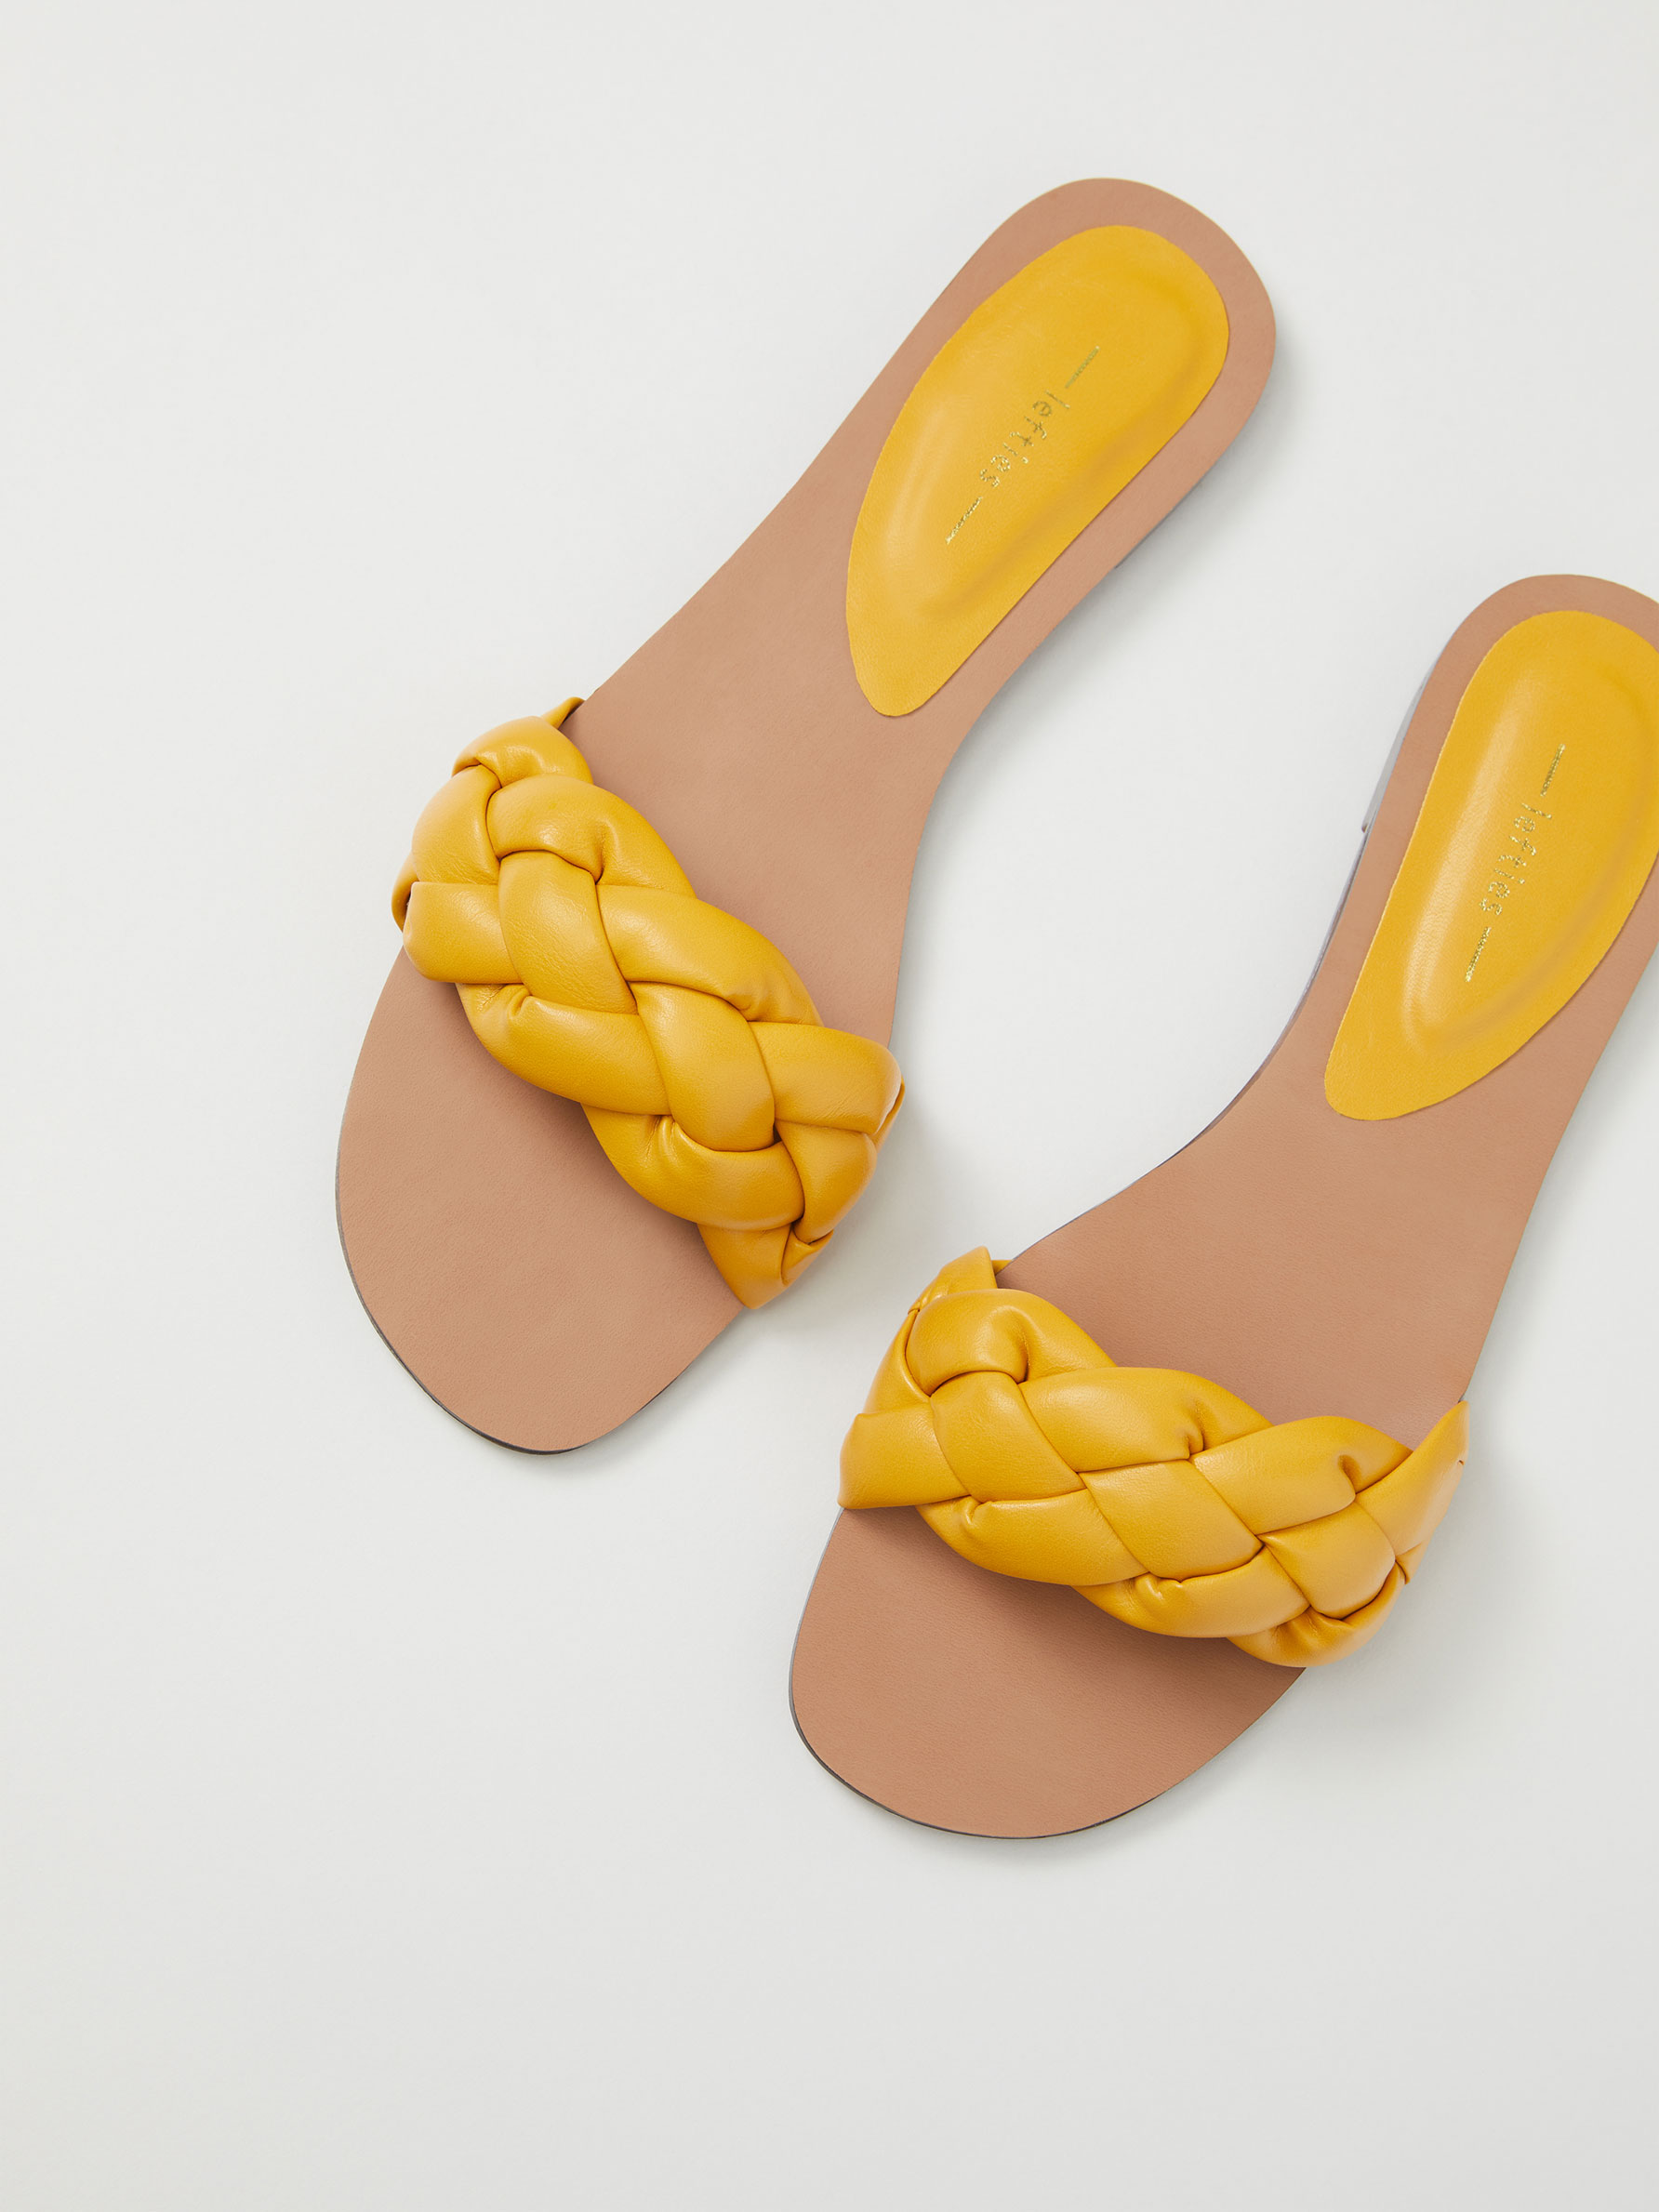 Las 6 sandalias planas de Lefties más cómodas, bonitas y baratas del verano